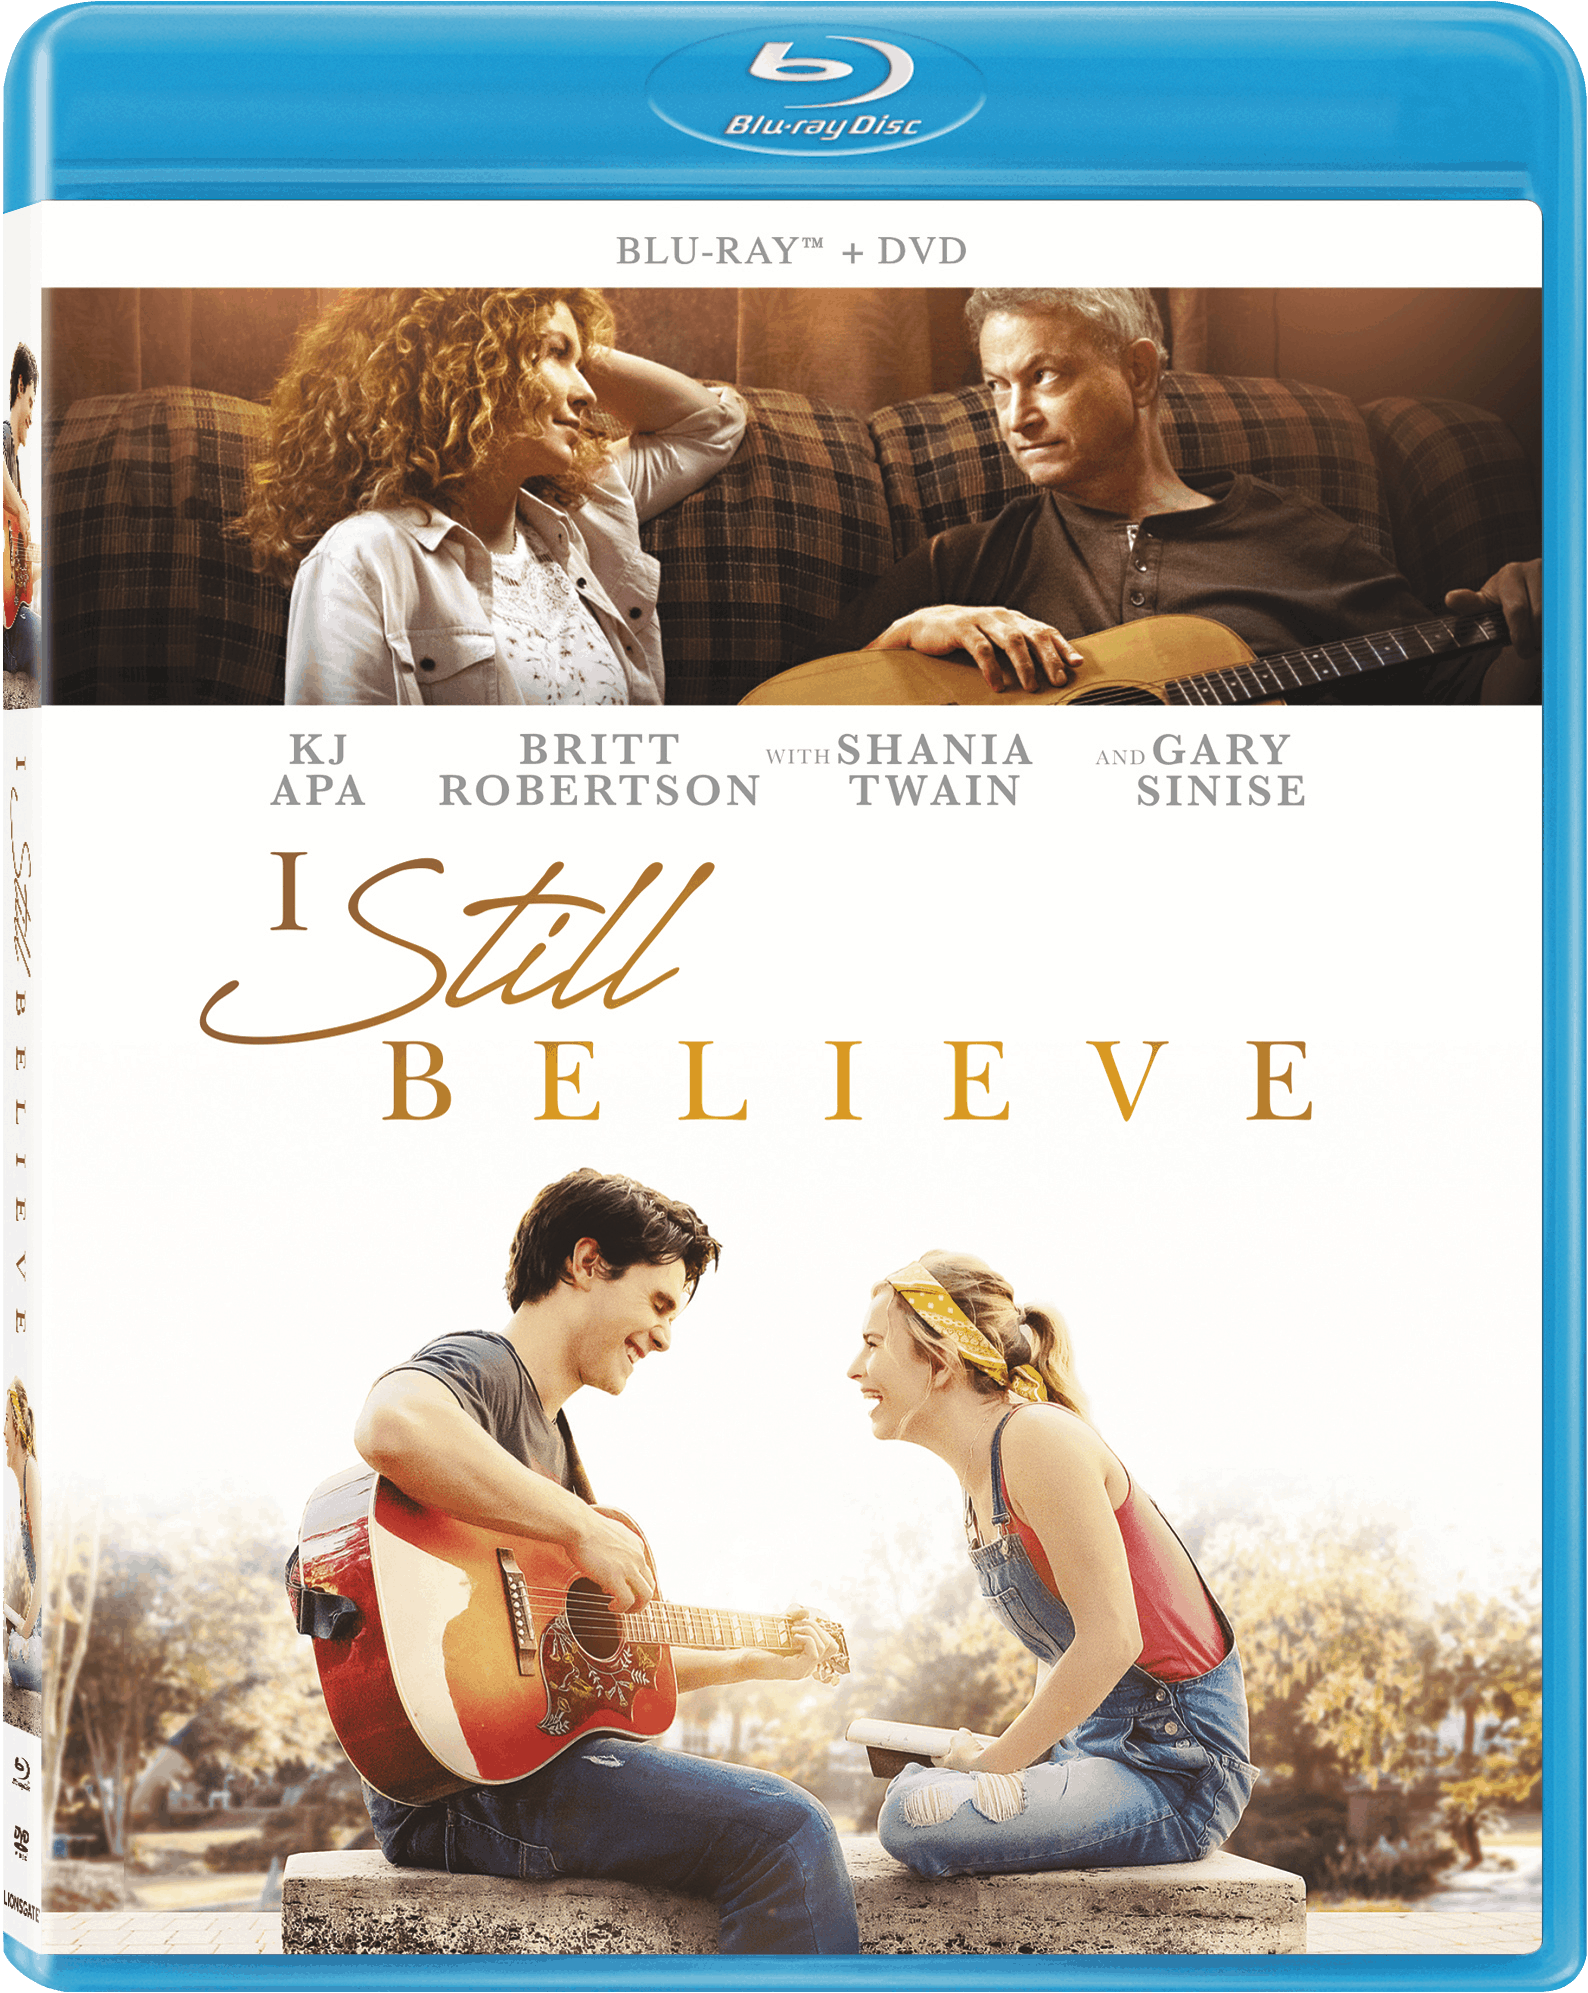 I Still Believe movie giveaway - DVD Bluray Digital bonus features